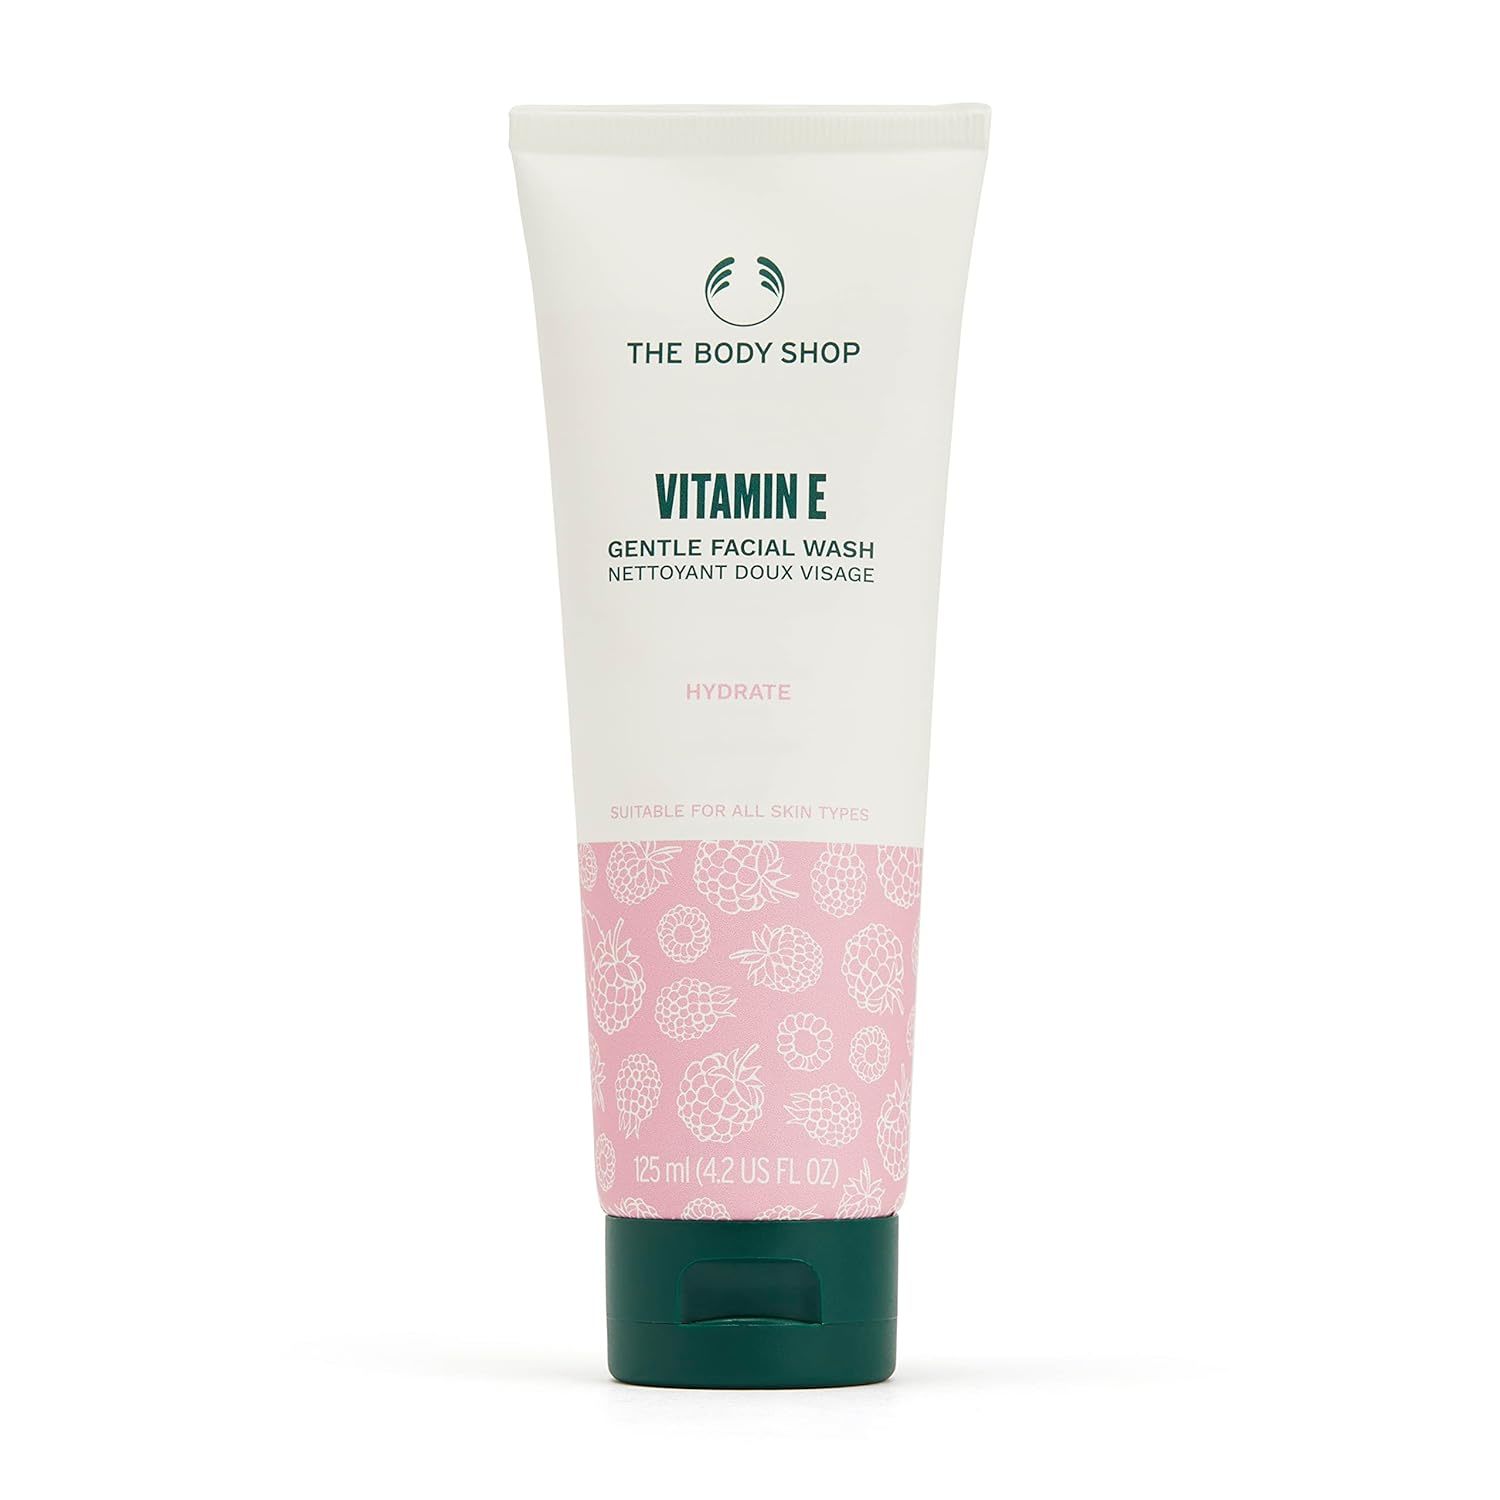 The Body Shop Vitamin E Facial Wash 125ml - $42.56